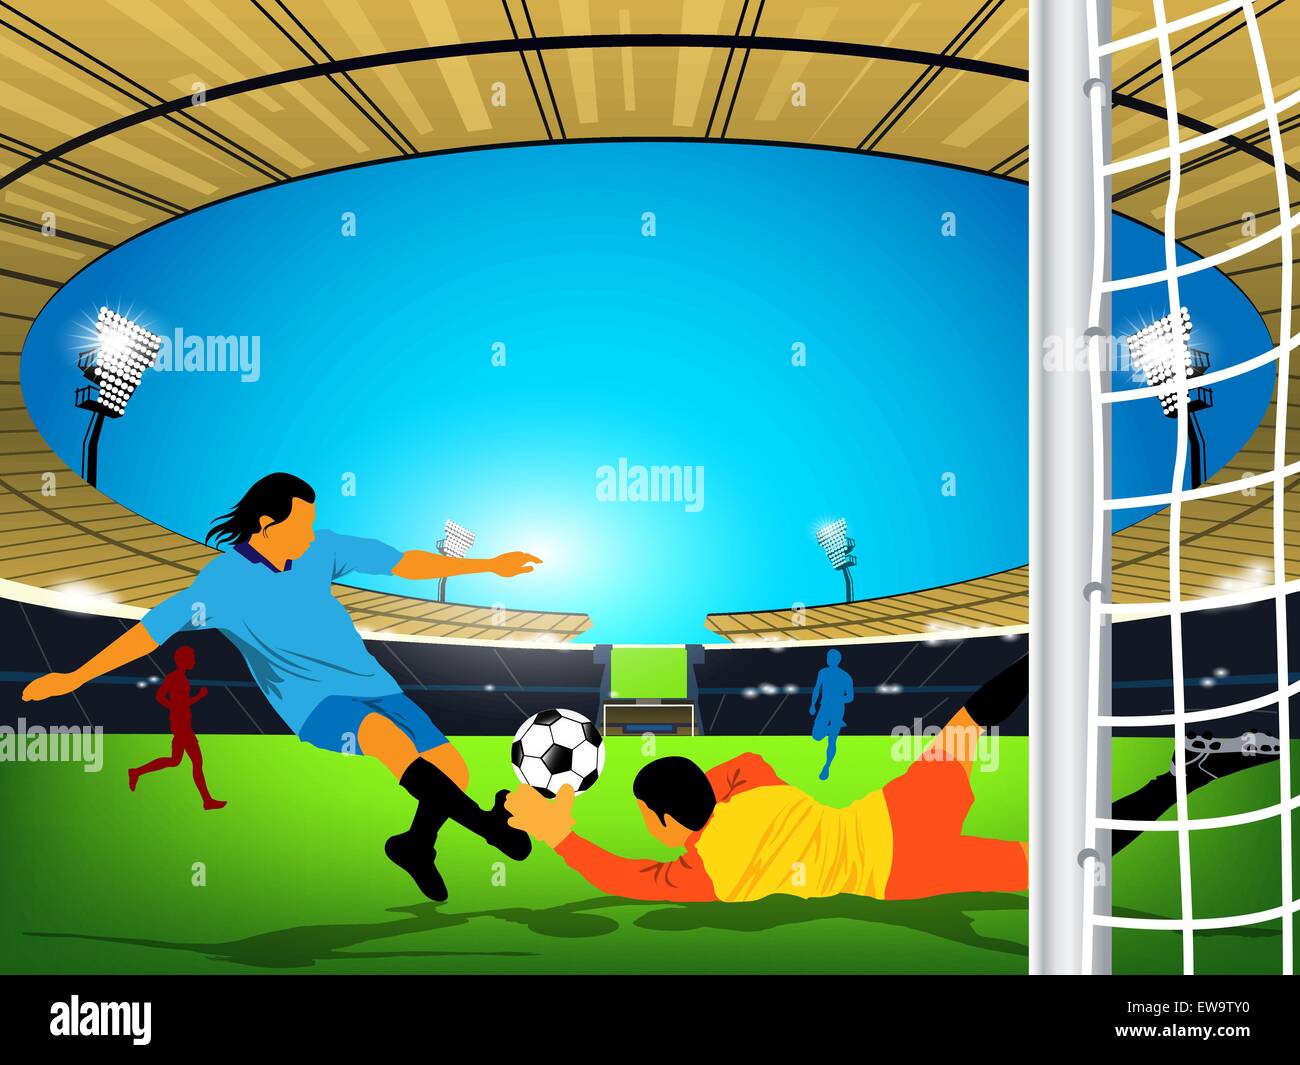 Abbildung: ein Fußball-Spiel in einer im Stadion. Blue Team Player ist mit einem Schuß am Ziel und goaler von Red Team versuchen, den Kick vom Erreichen des Ziels zu stoppen. Stock Vektor